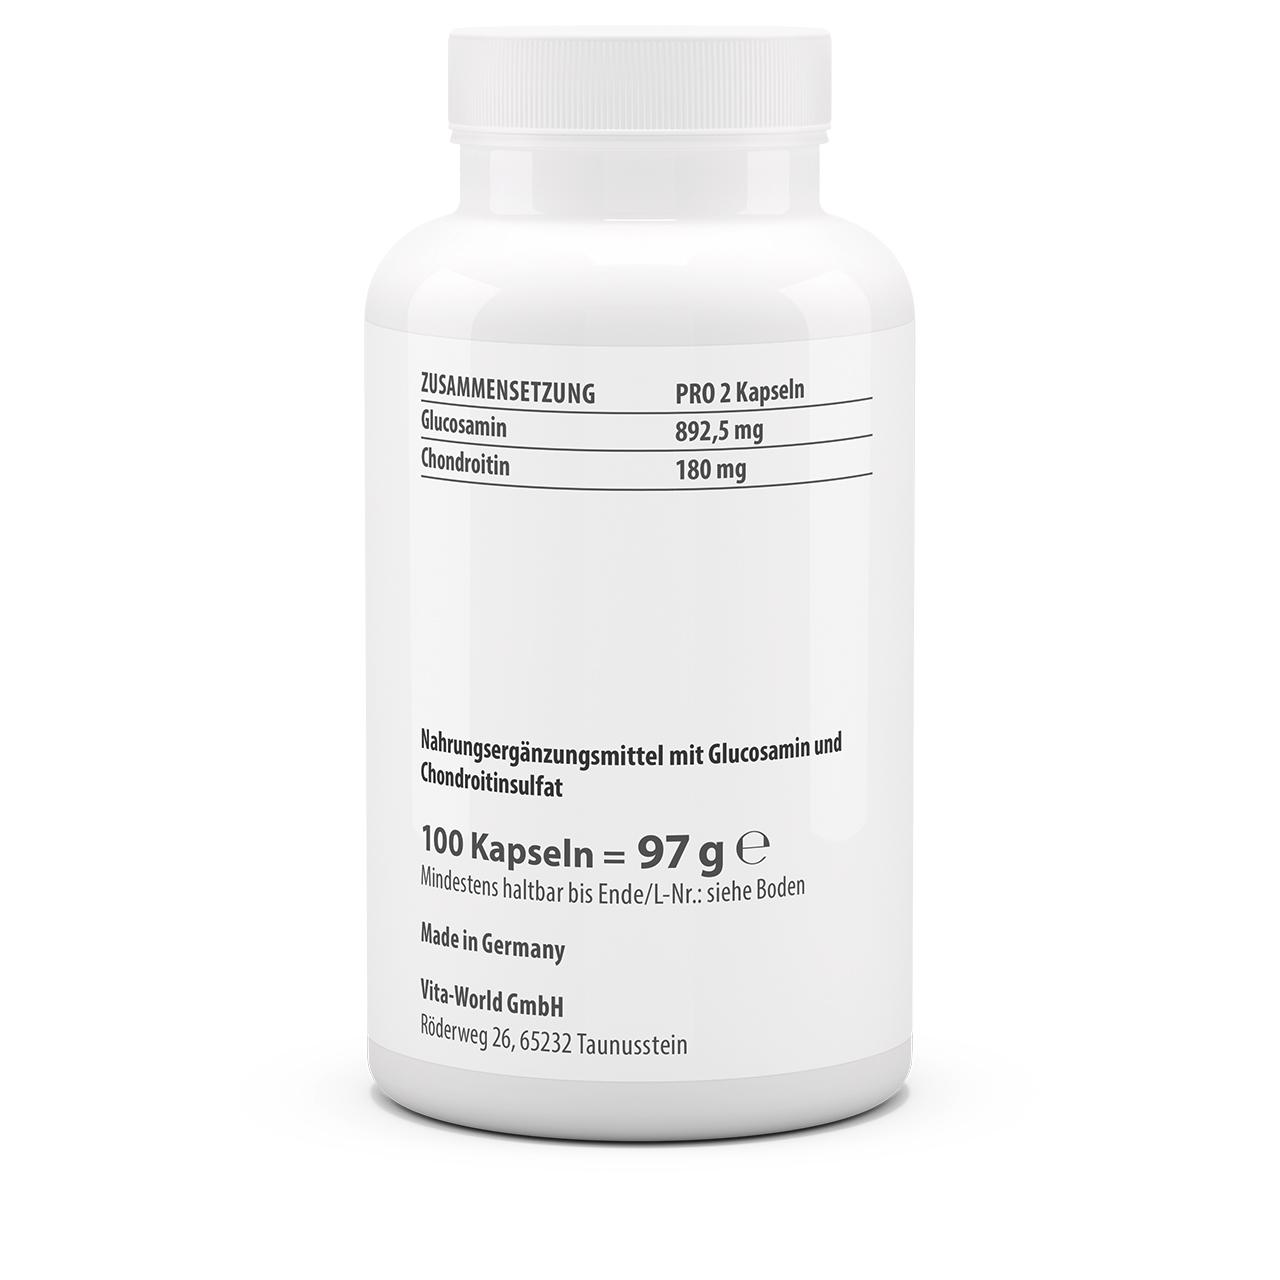 Glucosamin 500 + Chondroitin 400 (100 Kps)